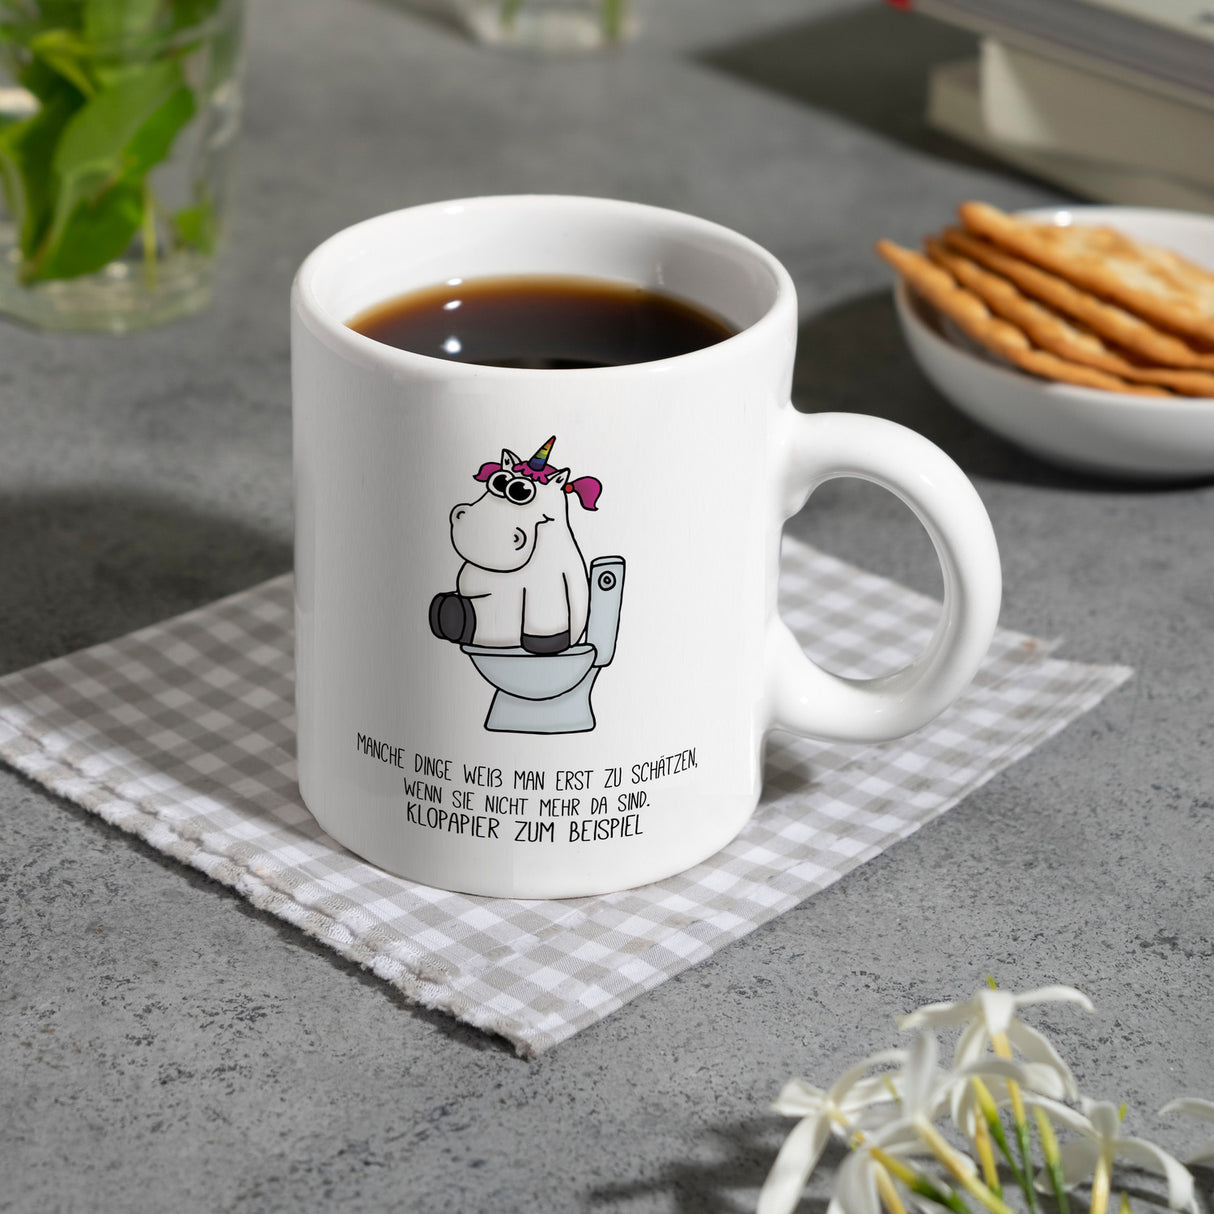 Kaffeebecher mit Spruch: manche Dinge weiß man erst zu ...